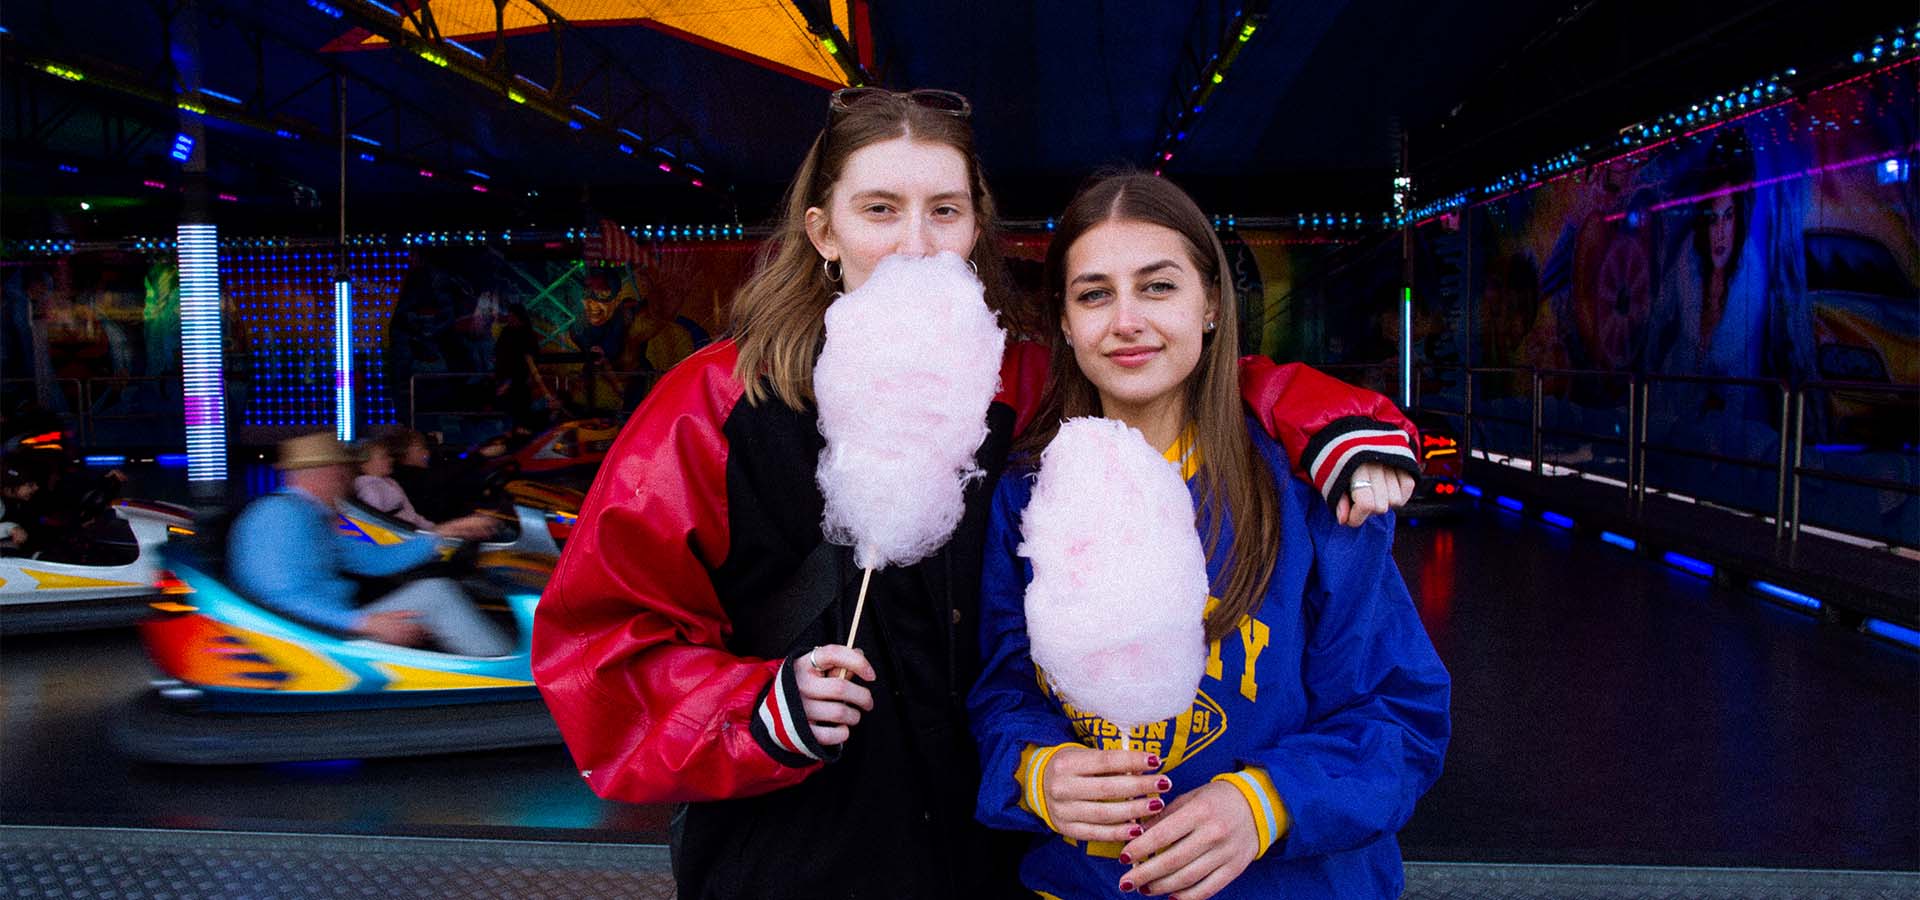 2 junge Frauen stehen vor einem Autoscooter mit Zuckerwatte